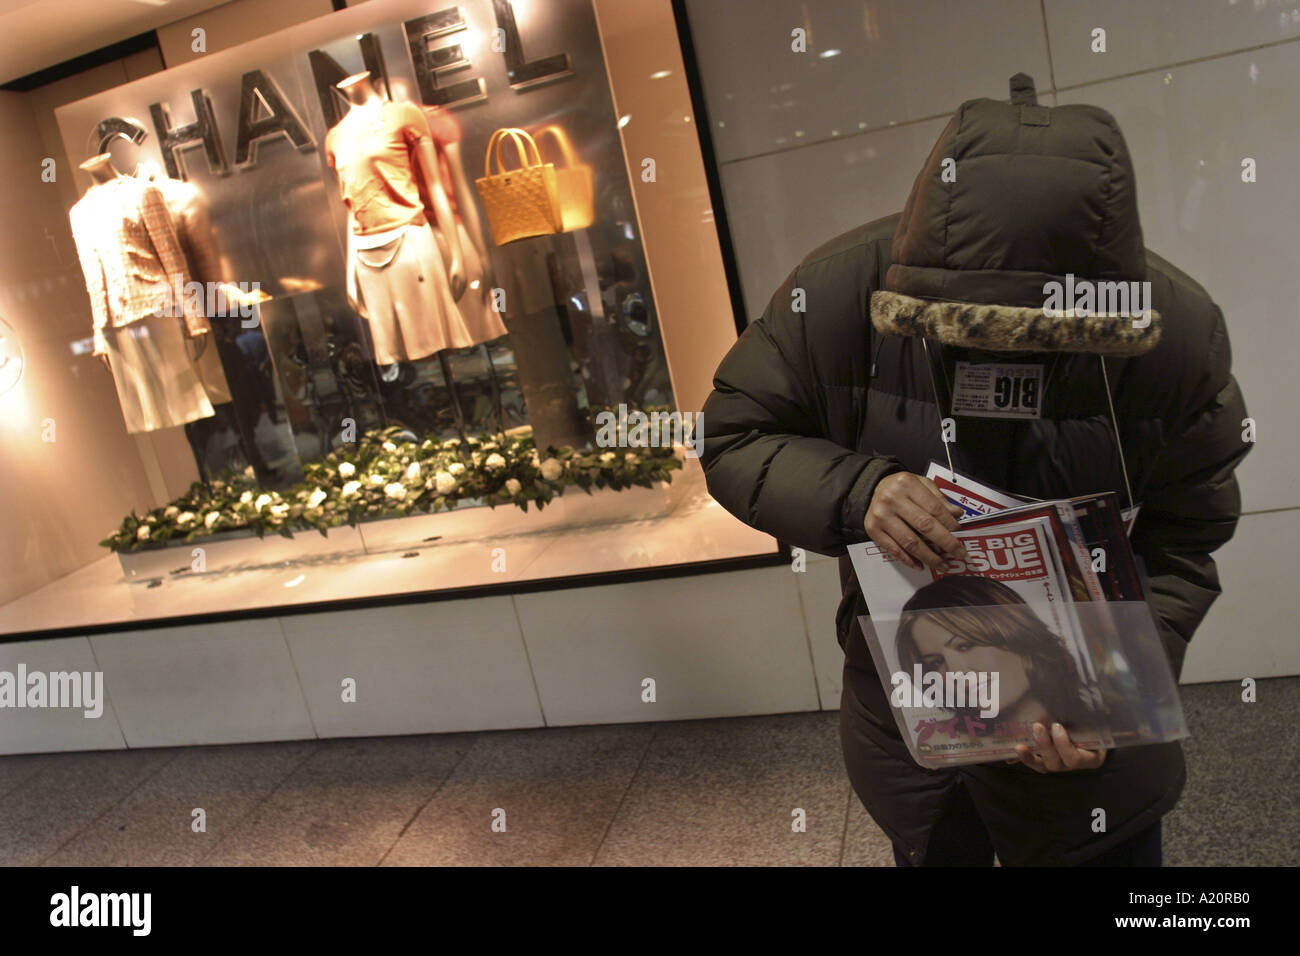 L'homme sans-abri japonais vendent le gros problème en face de magasin Chanel mode, Tokyo, Japon. Banque D'Images